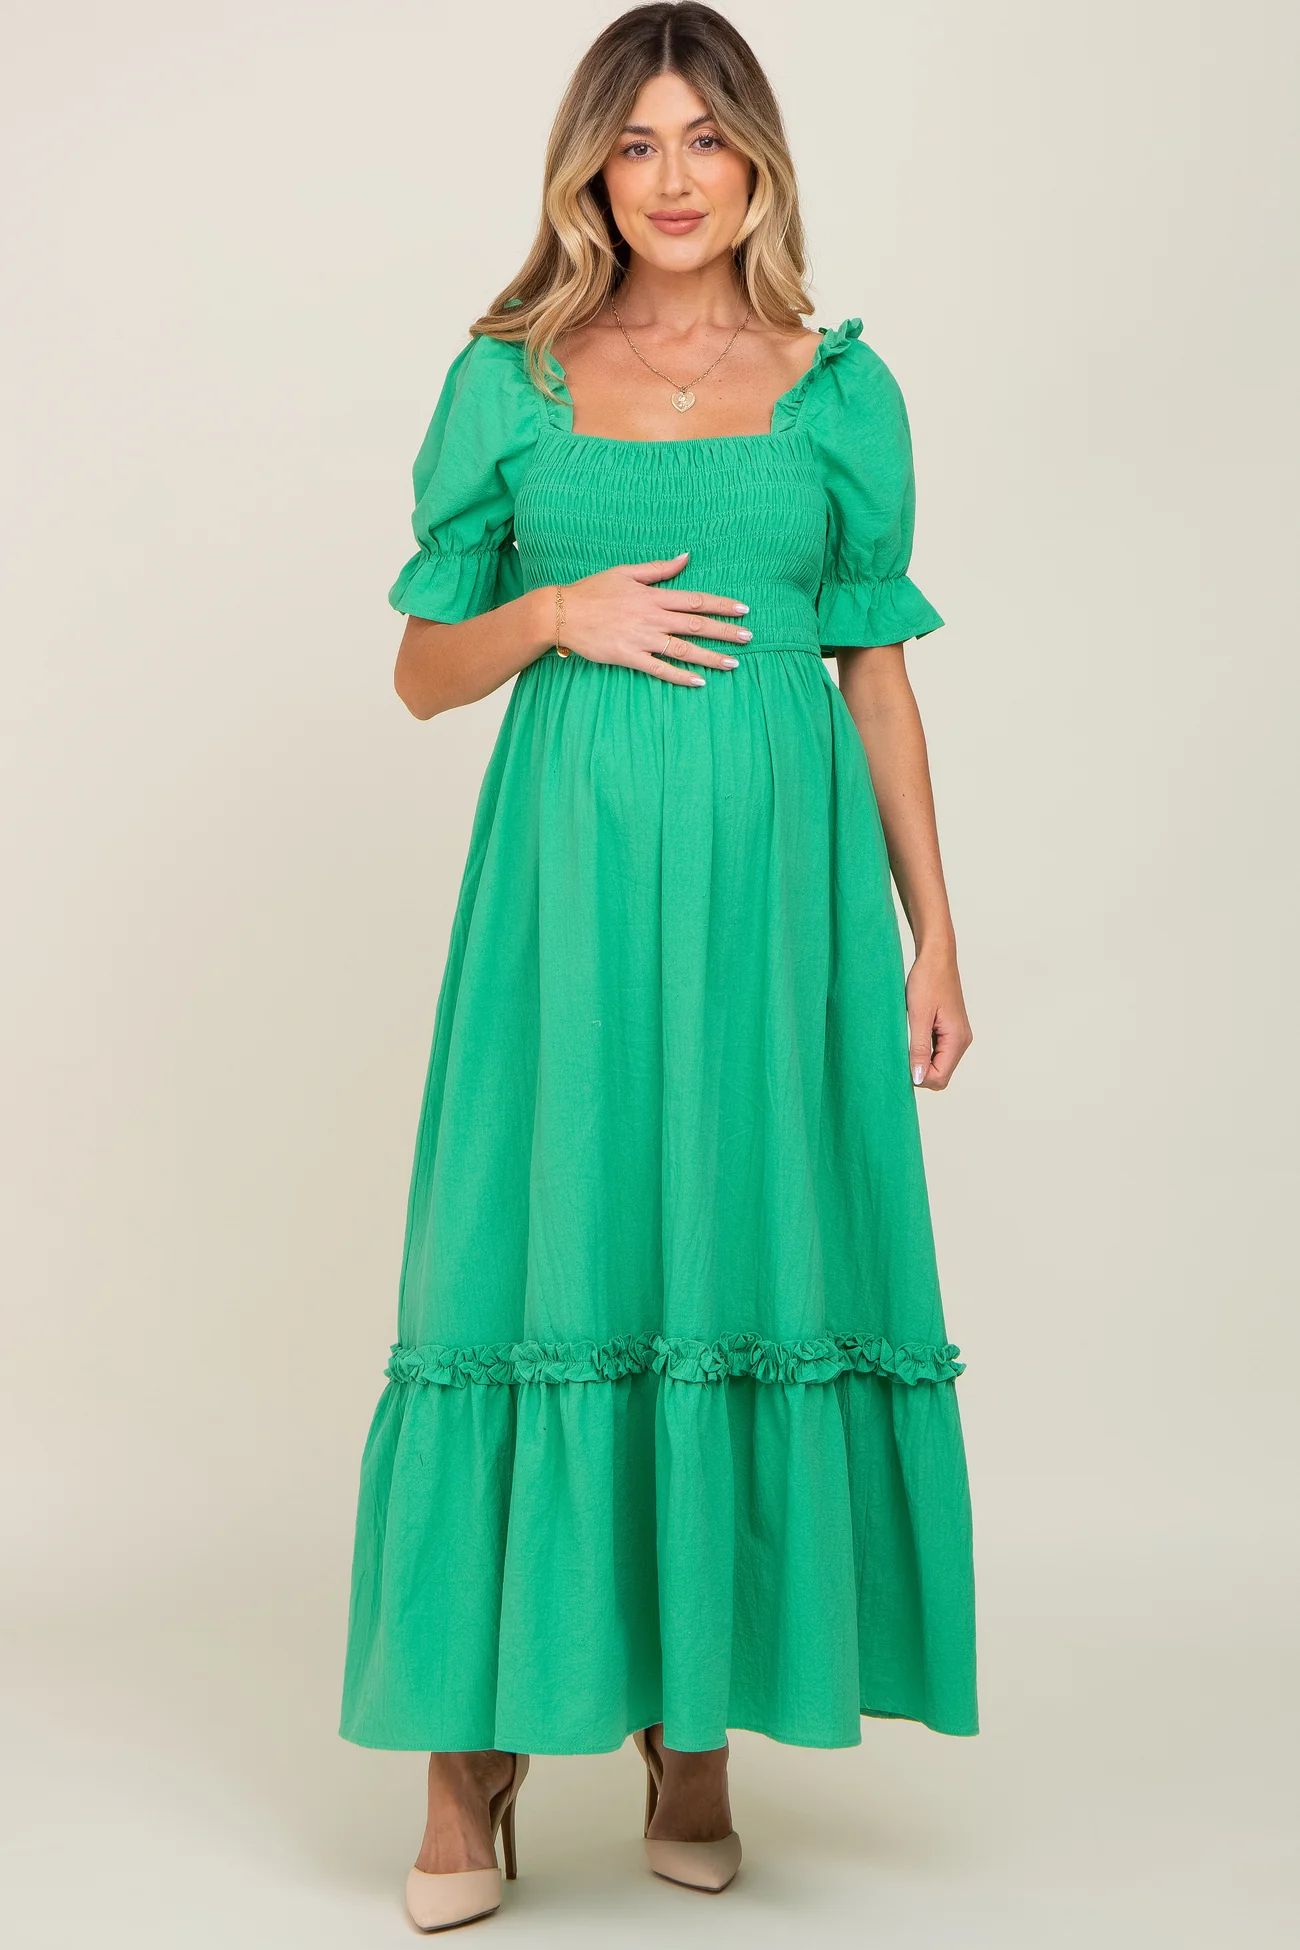 Green Puff Sleeve Ruffle Accent Maternity Maxi Dress | PinkBlush Maternity